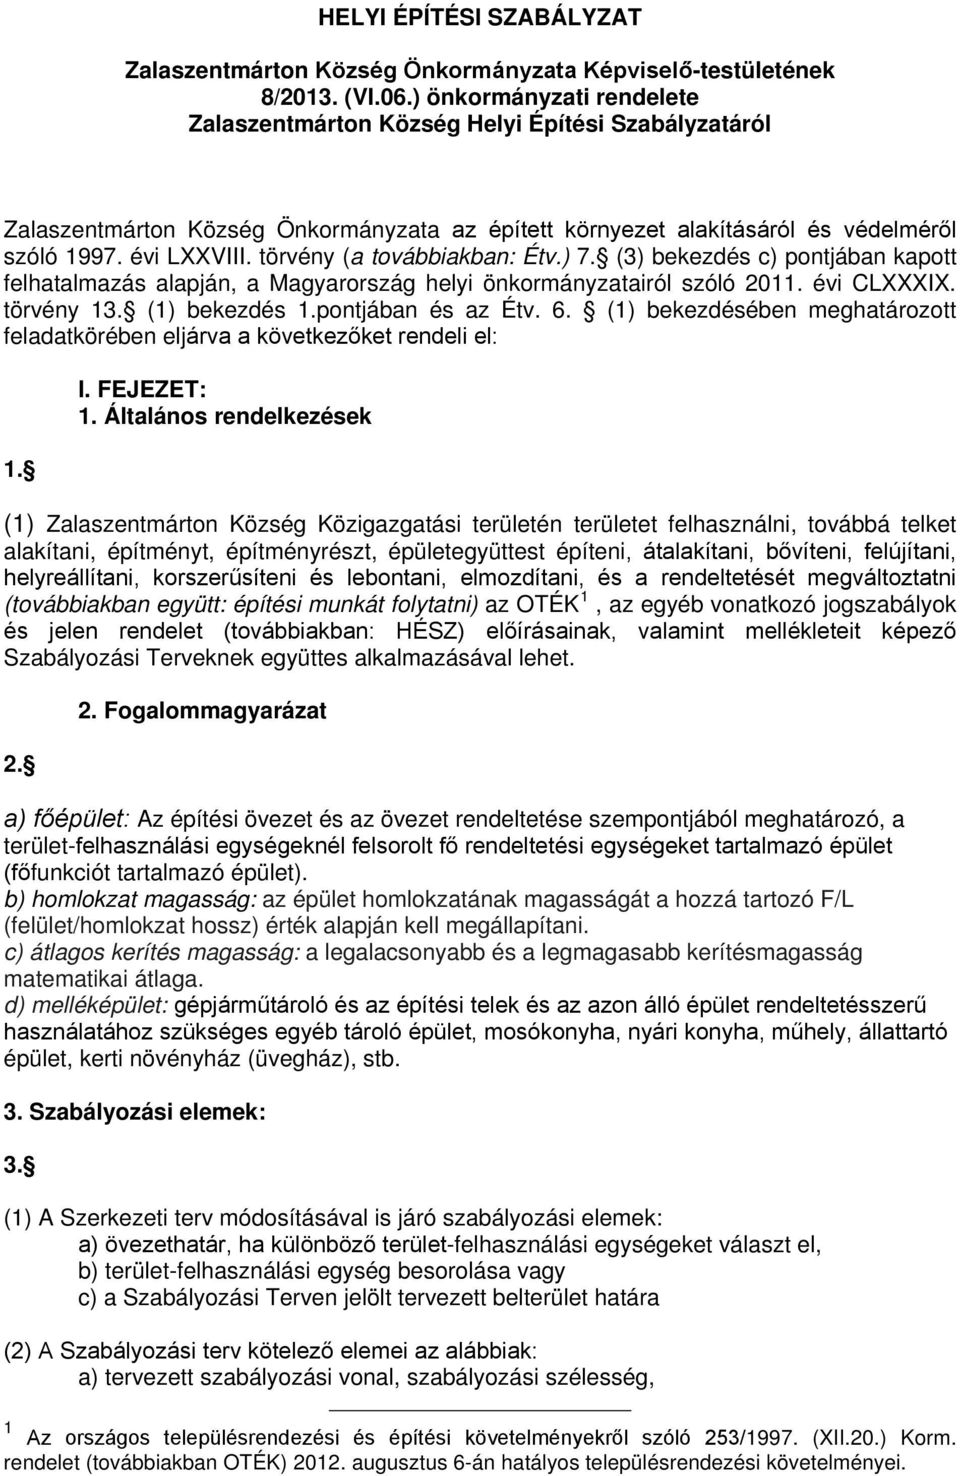 törvény (a továbbiakban: Étv.) 7. (3) bekezdés c) pontjában kapott felhatalmazás alapján, a Magyarország helyi önkormányzatairól szóló 2011. évi CLXXXIX. törvény 13. (1) bekezdés 1.